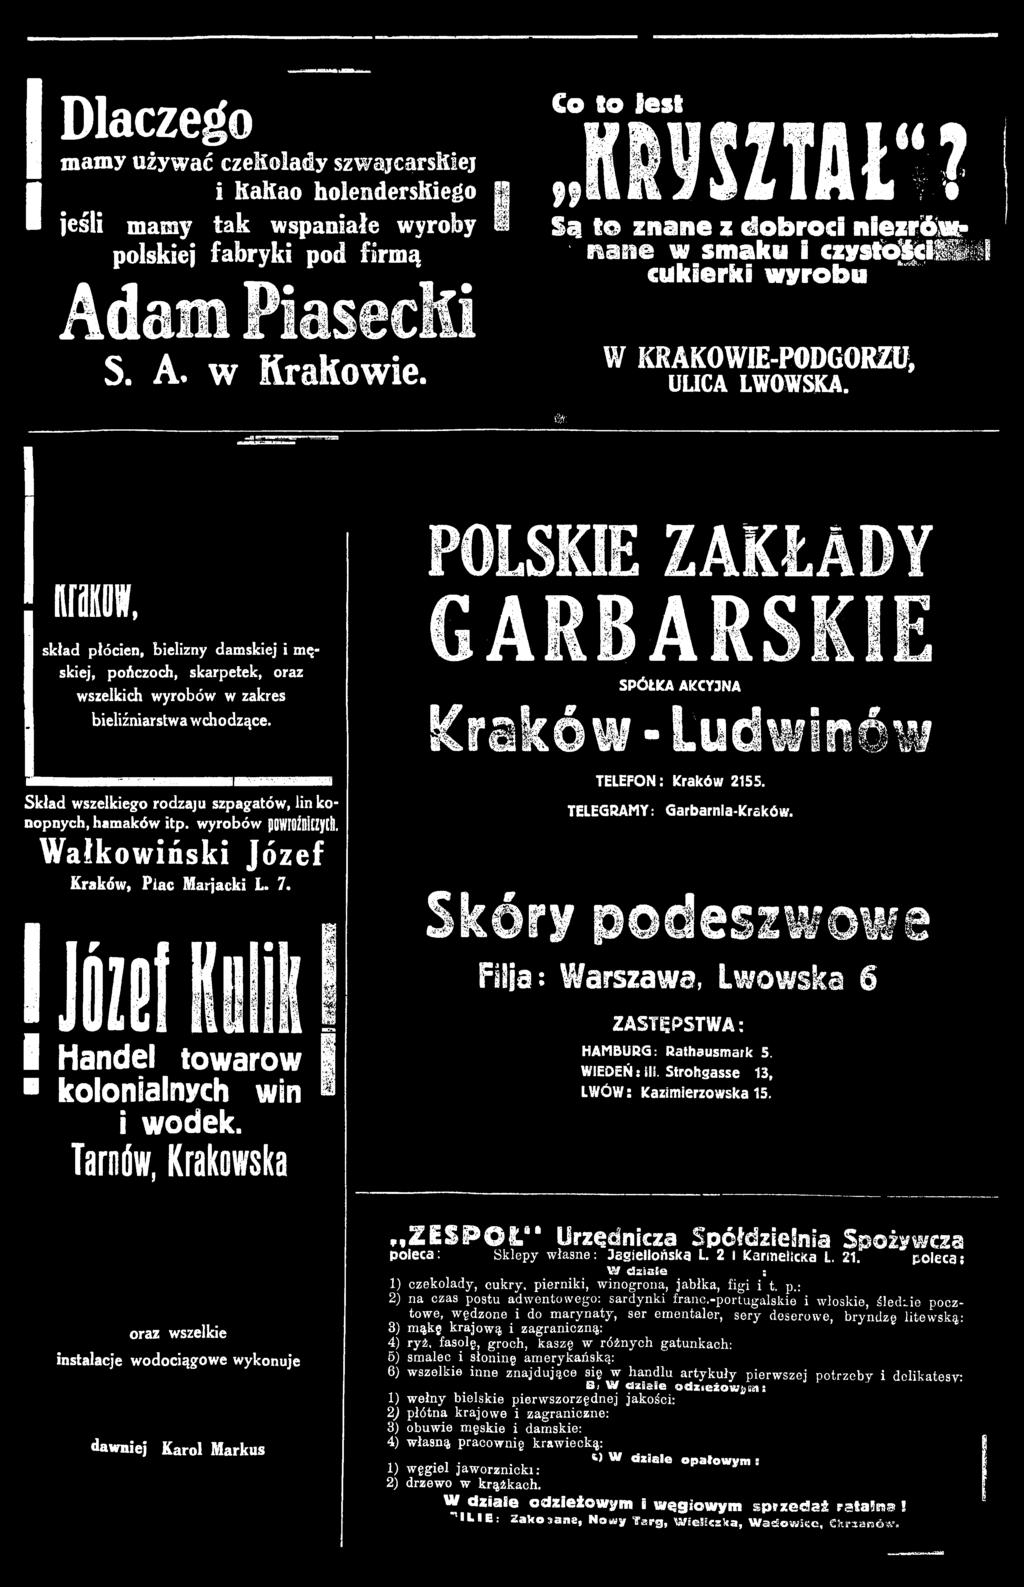 Tarnów, Krakowska POLSKIE ZAKŁADY GARBARSKIE SPÓŁKA AKCYJNA Kraków - Ludwinów TELEFON: Kraków 2155. TELEGRAMY: Garbarnia-Kraków.